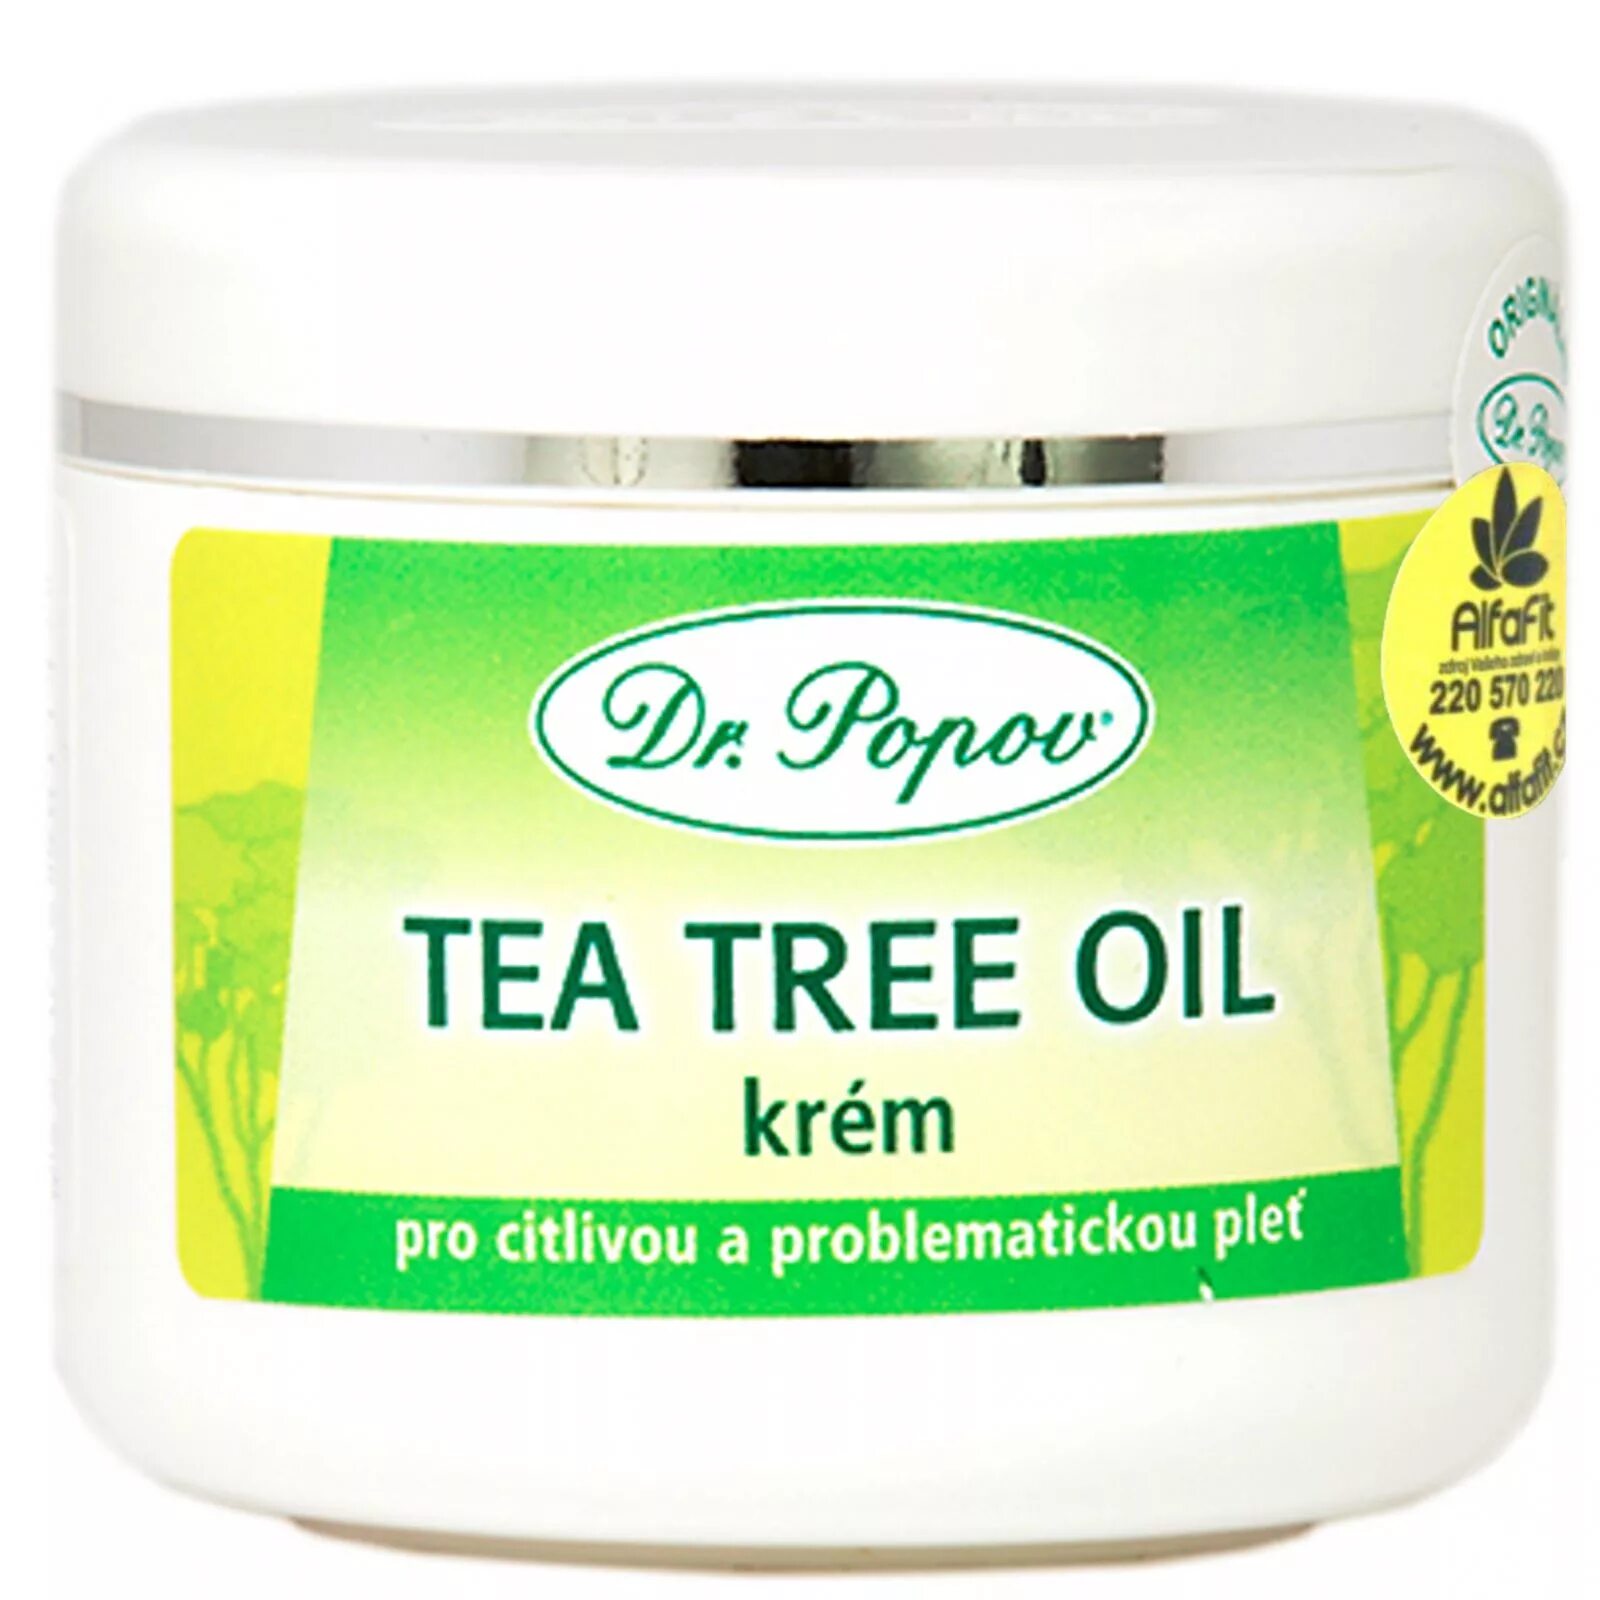 Крем чайное дерево. Крем из чайного дерева. Tea Tree крем для лица. Is Tree кирем.